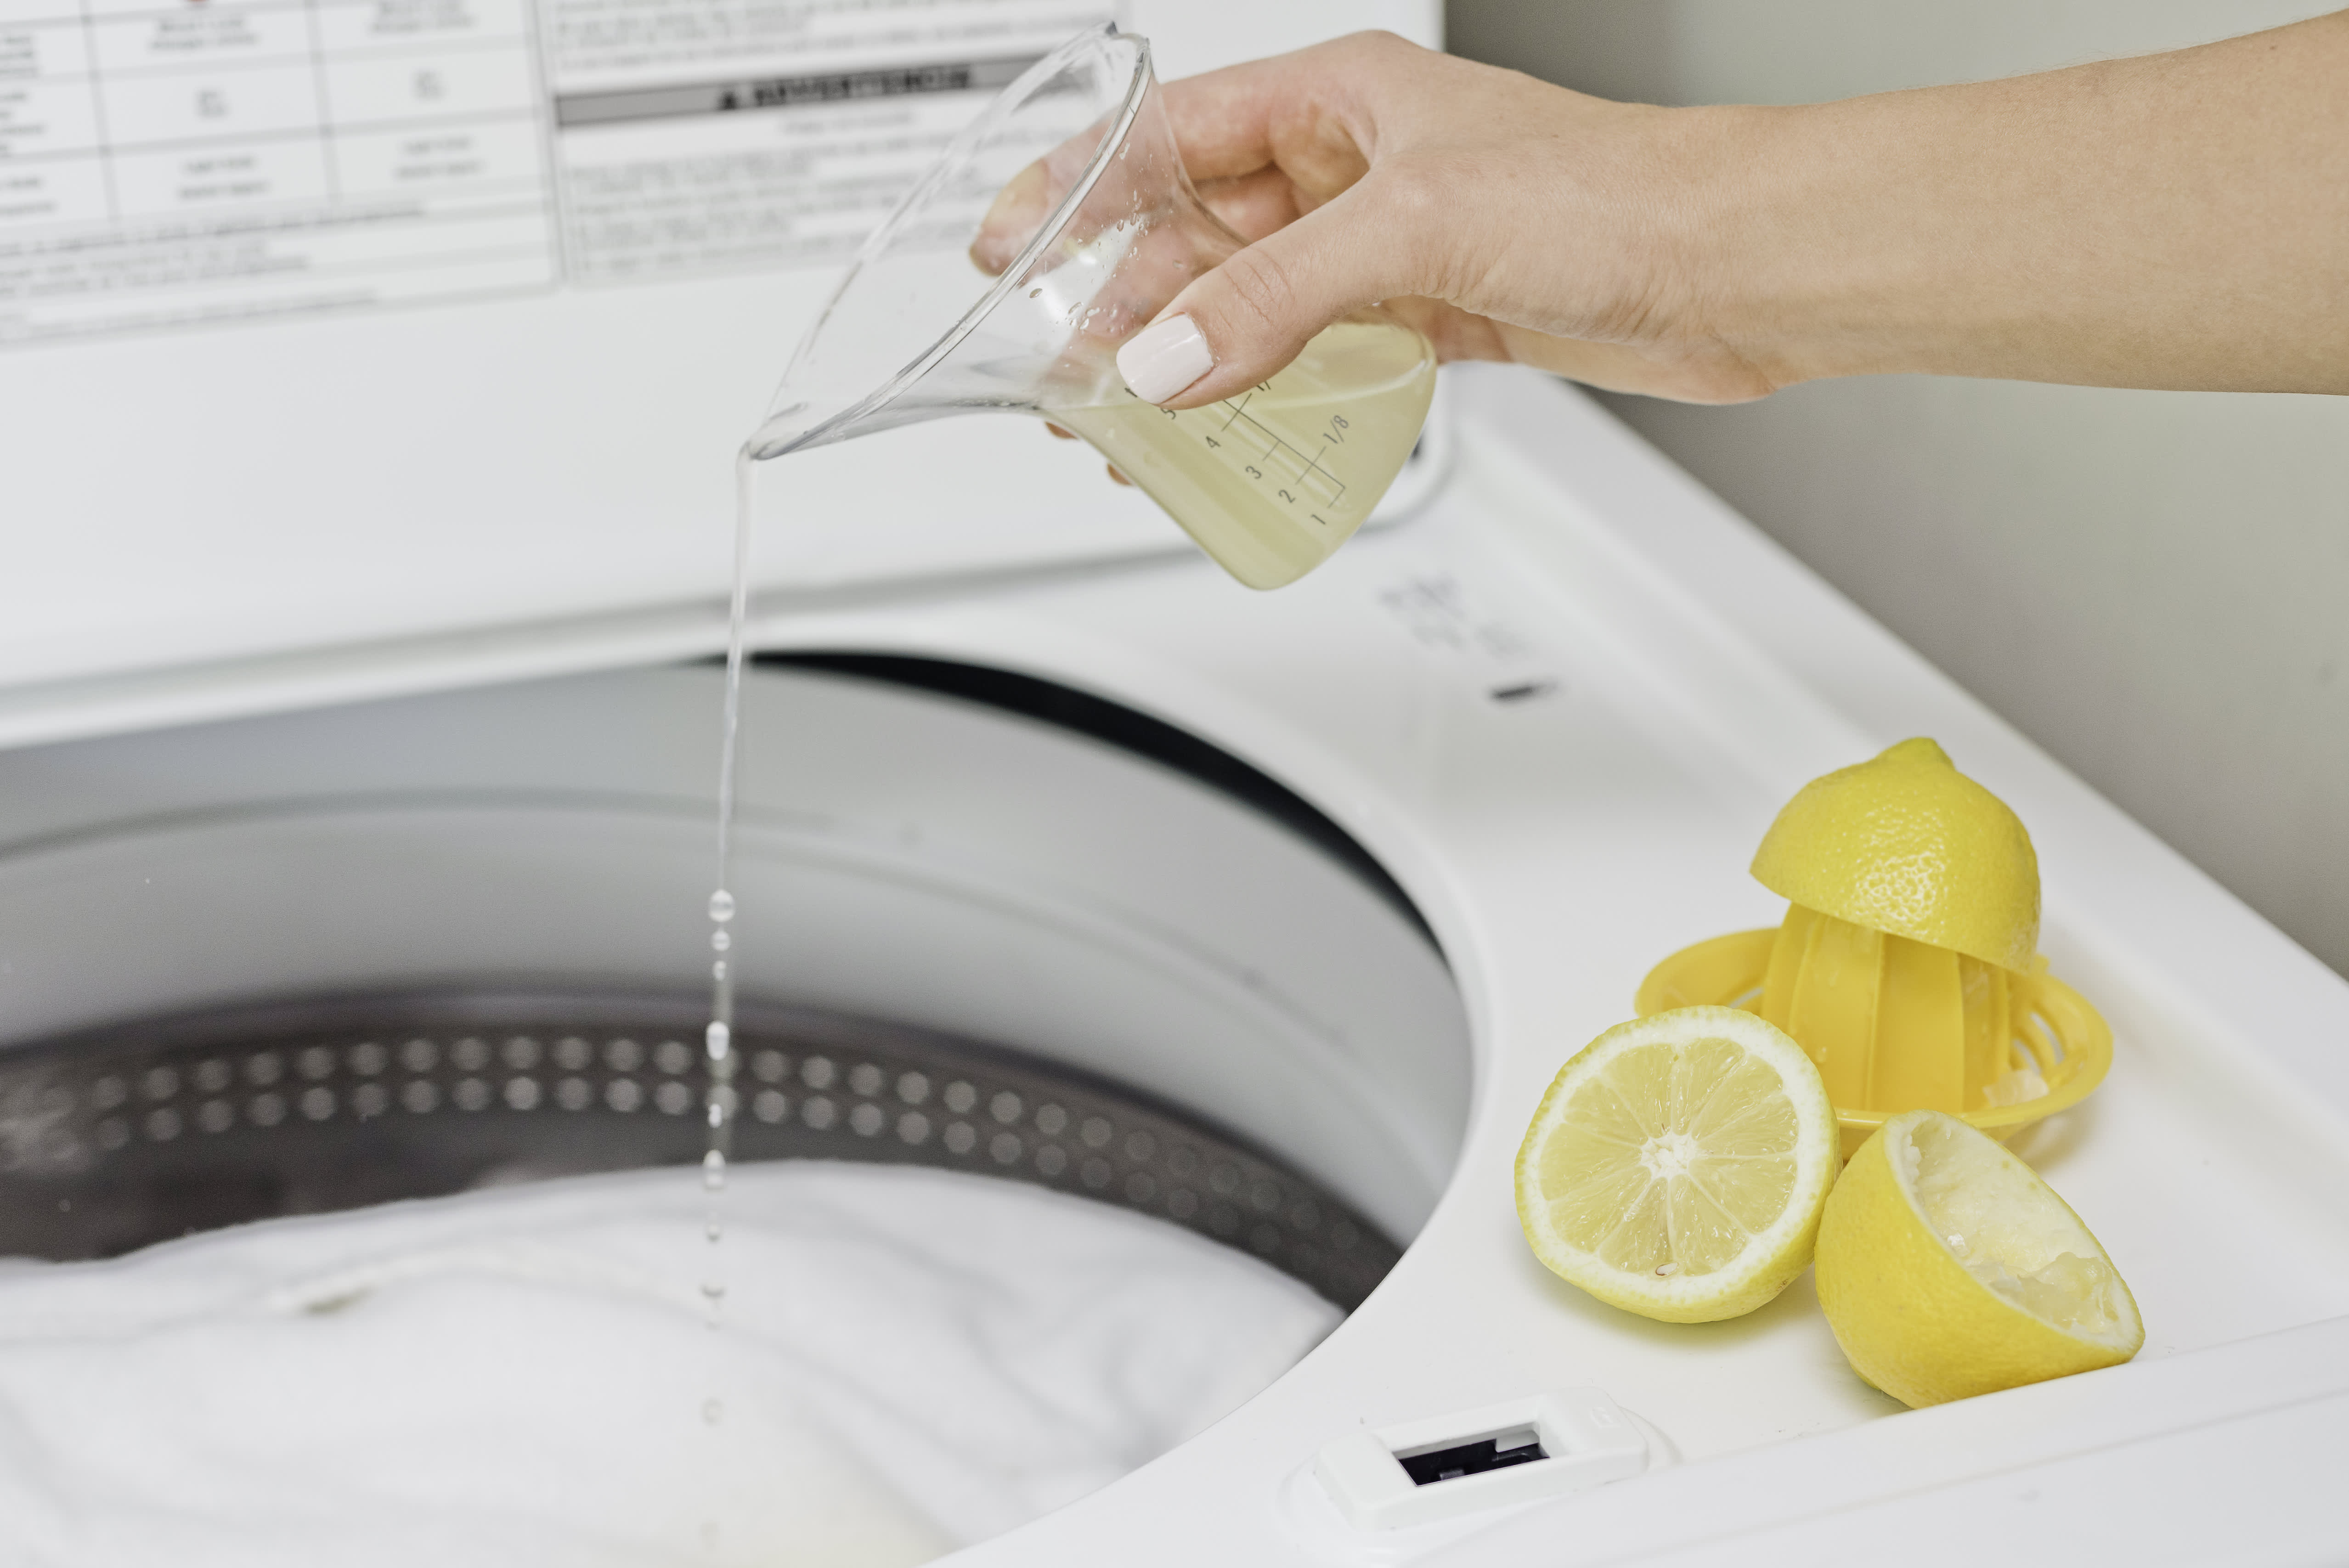 Можно белизну в стиральную машину. Лайфхак для стиральной машины. Лимонная кислота в стиральную машинку. Чистка стиральной машины лимонной кислотой. Отбеливание вещей лимонной кислотой.